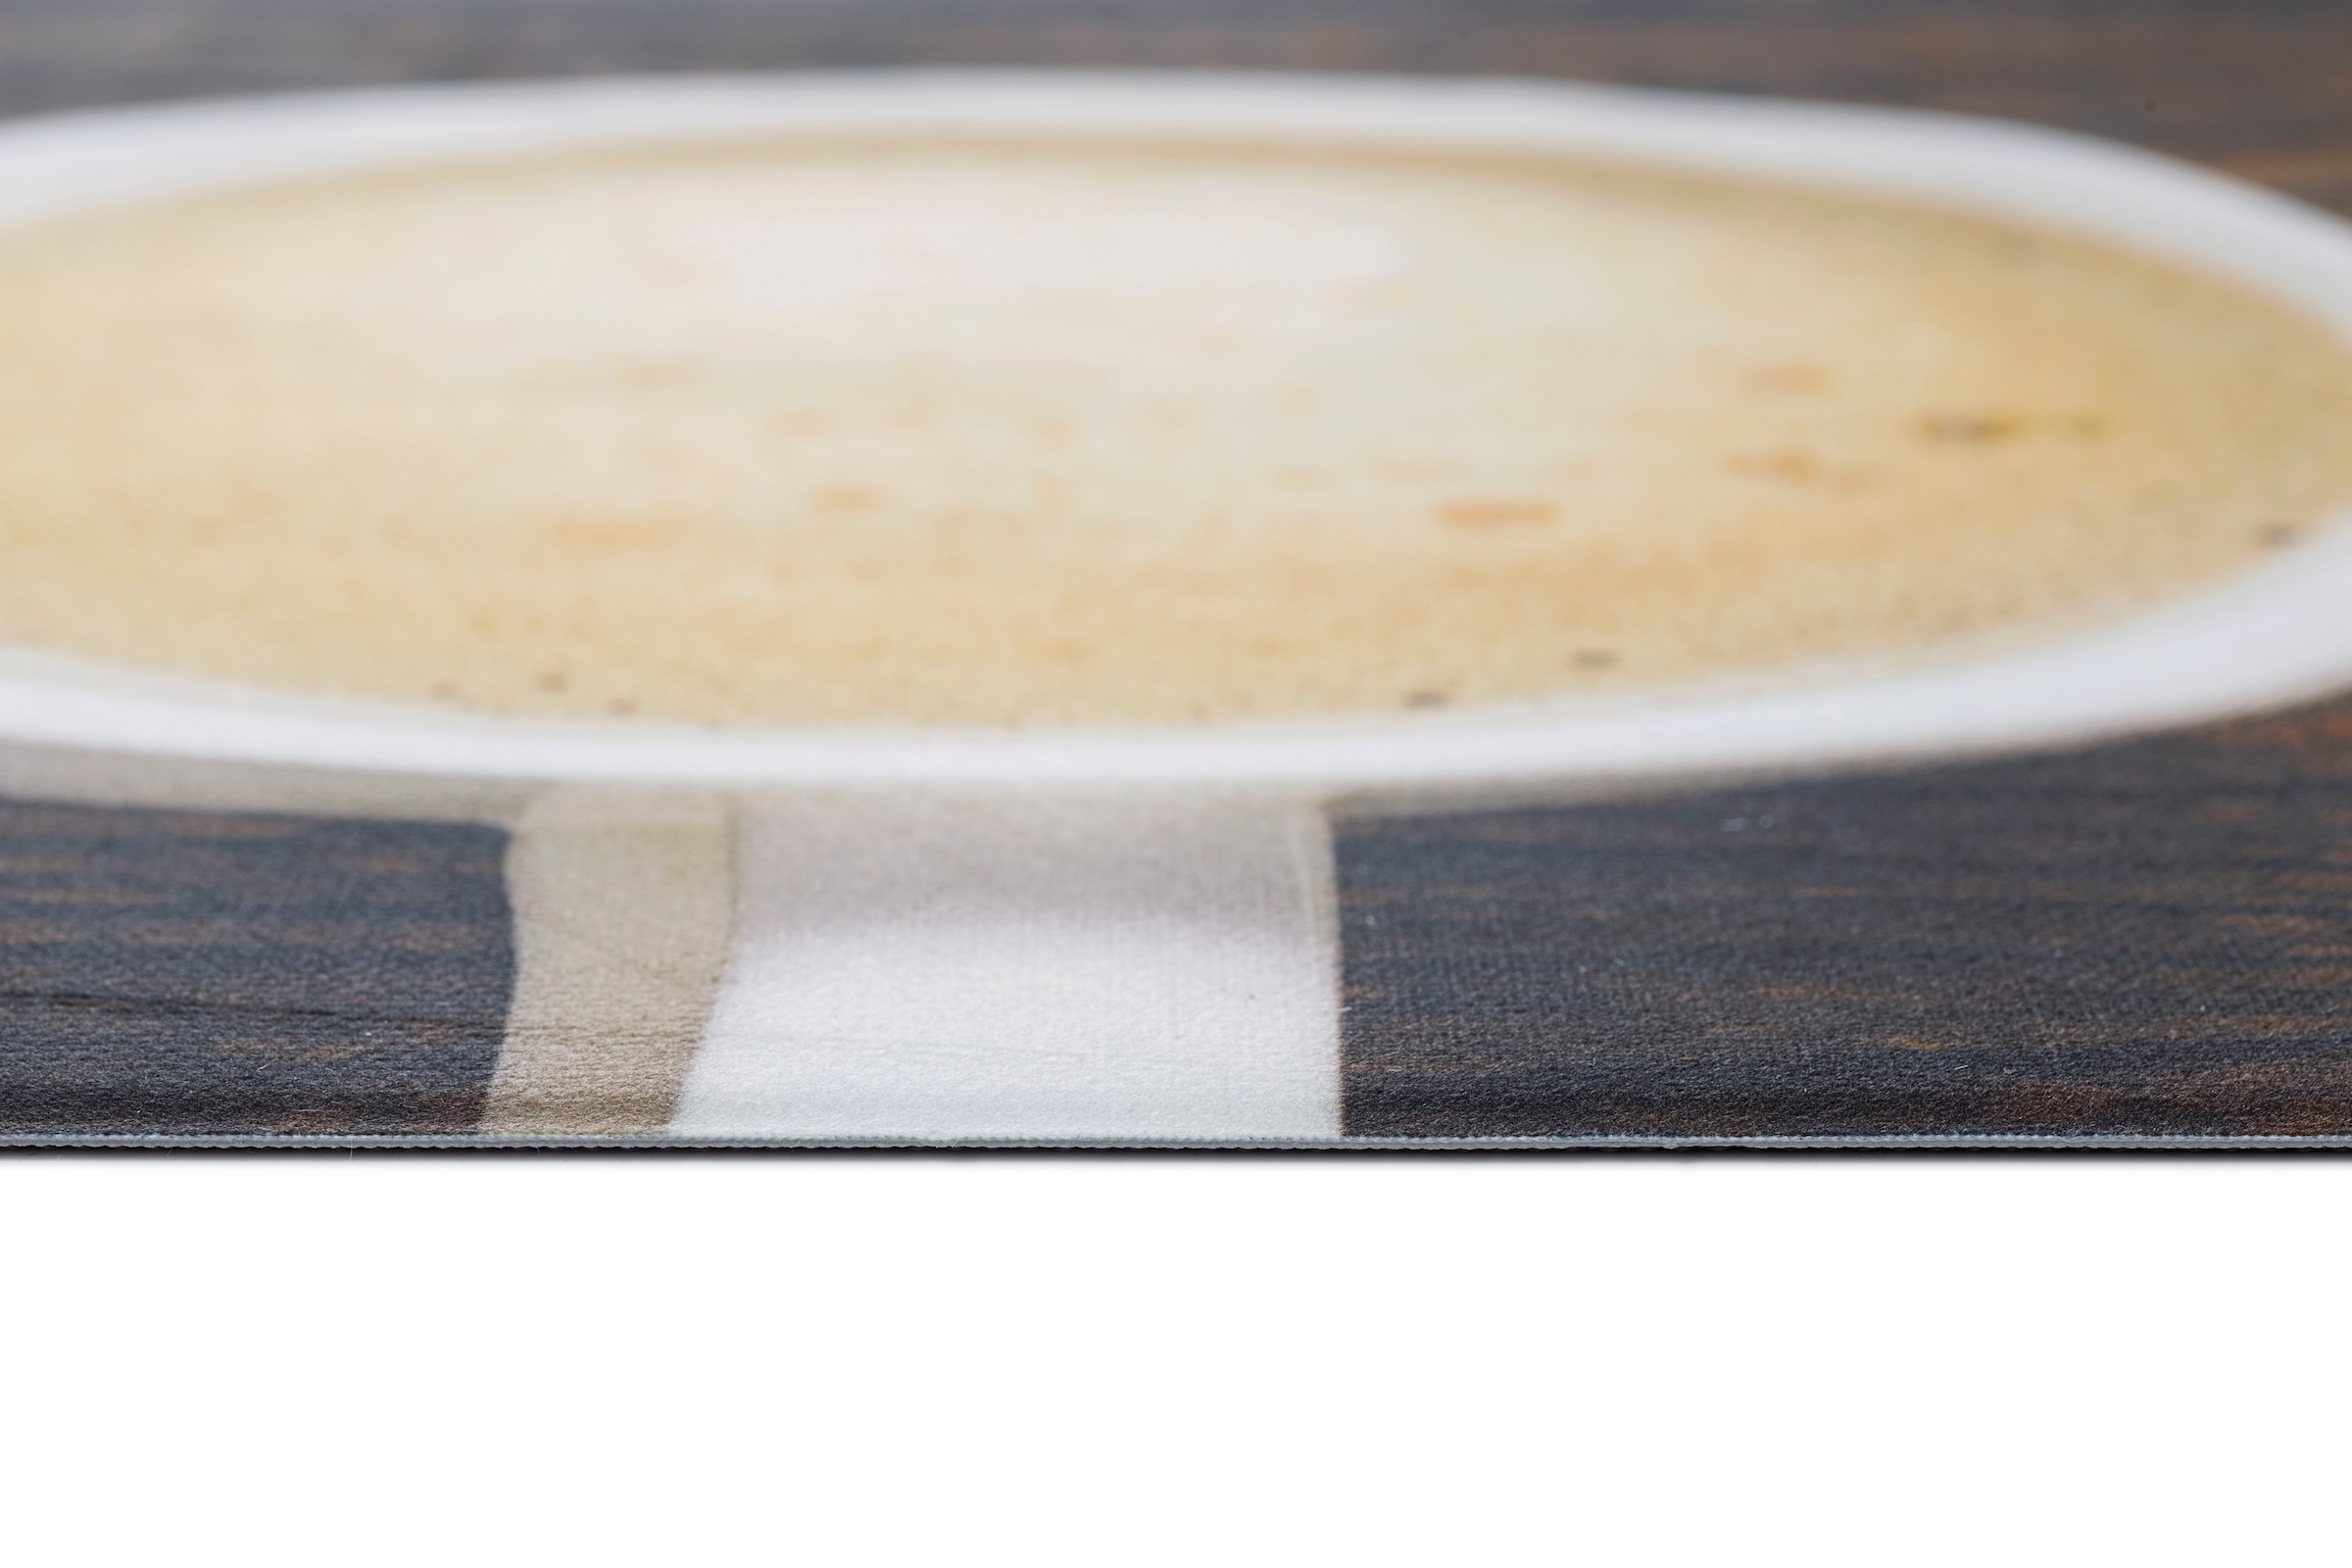 Andiamo Küchenläufer »Kaffeetassen«, rechteckig, aus Vinyl, abwischbar,  rutschhemmend, Motiv Tassen, Größe 50x150 cm kaufen bei OTTO